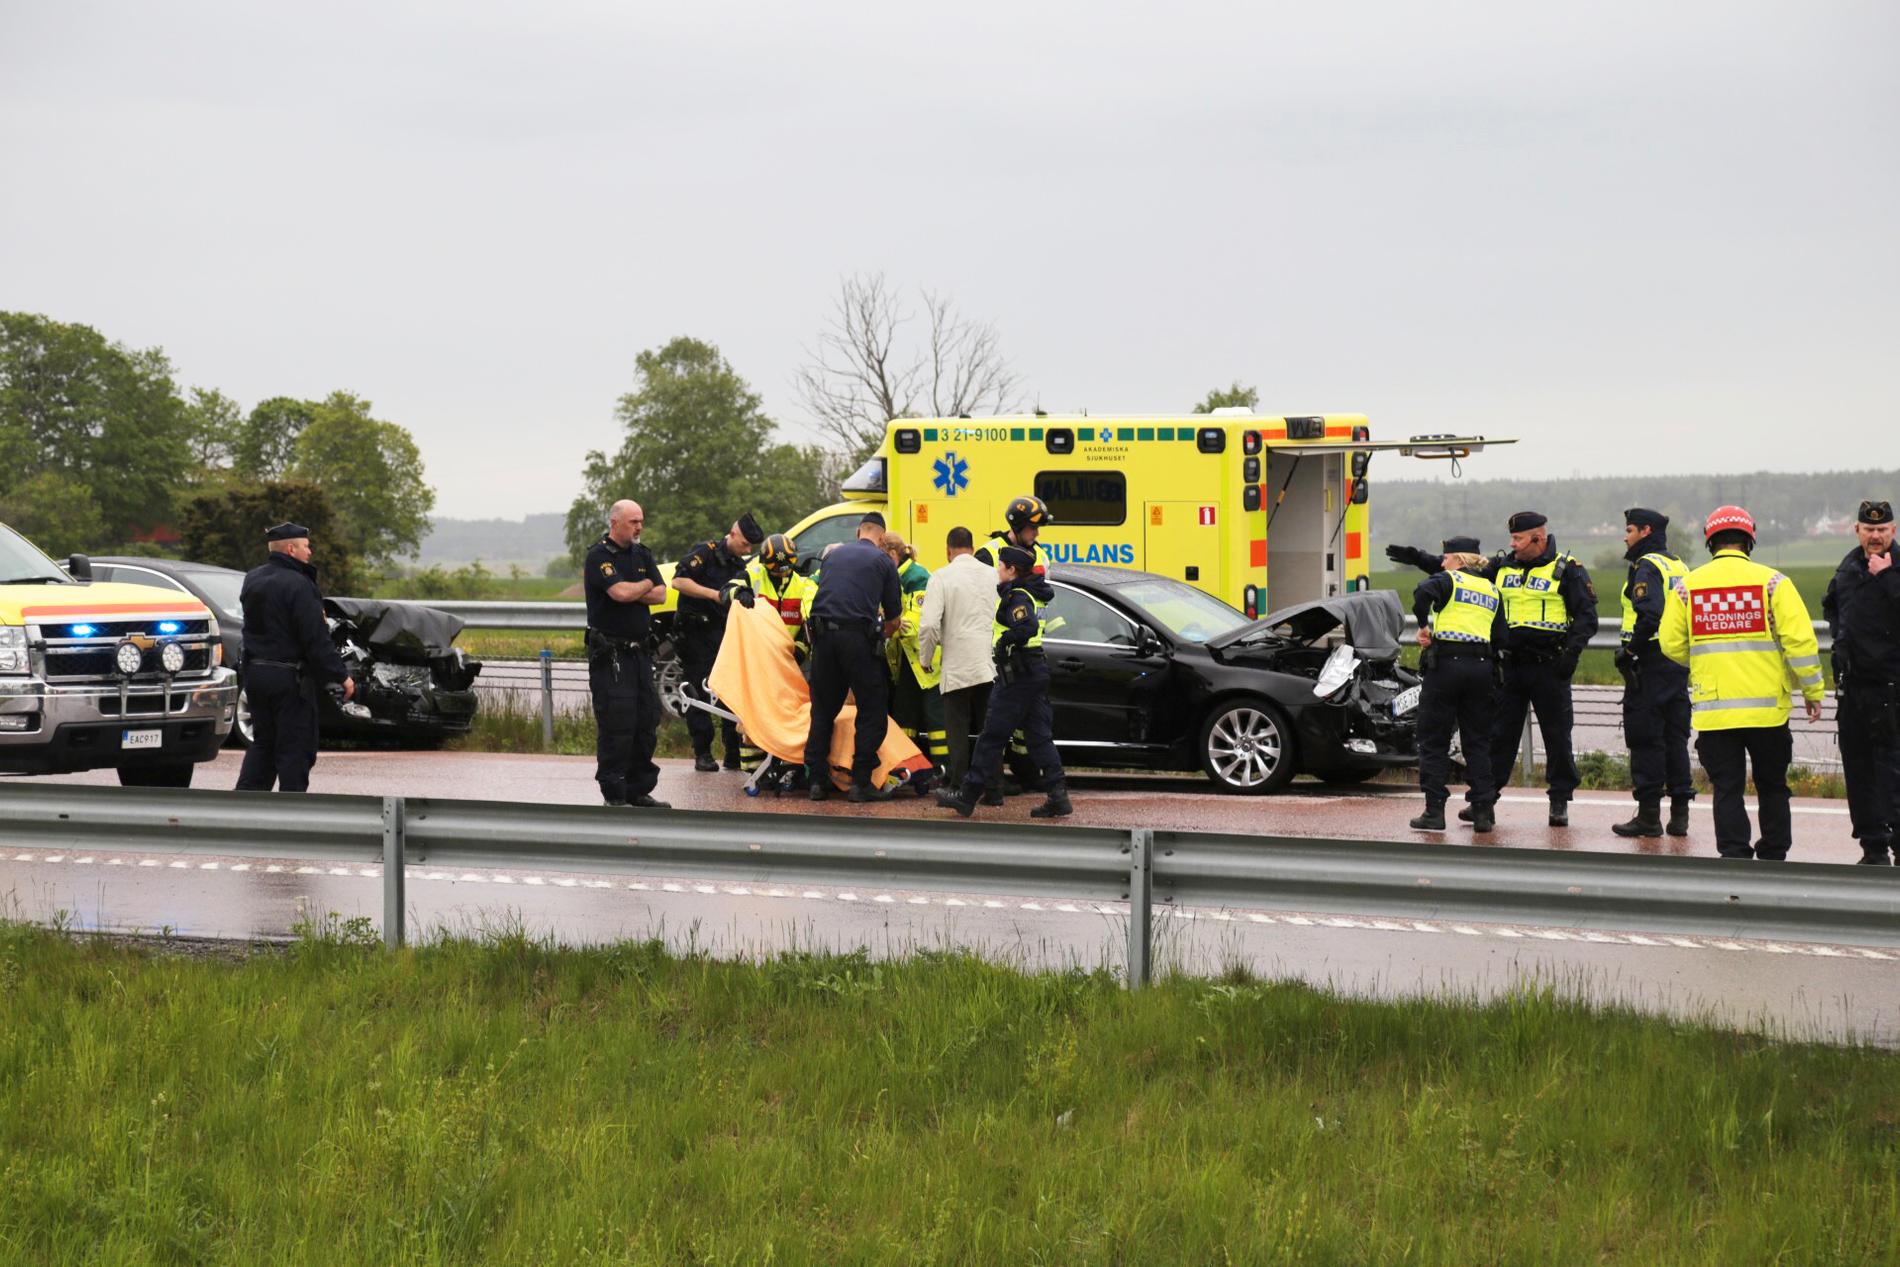 Olycka i Gnistarondellen i södra Uppsala.